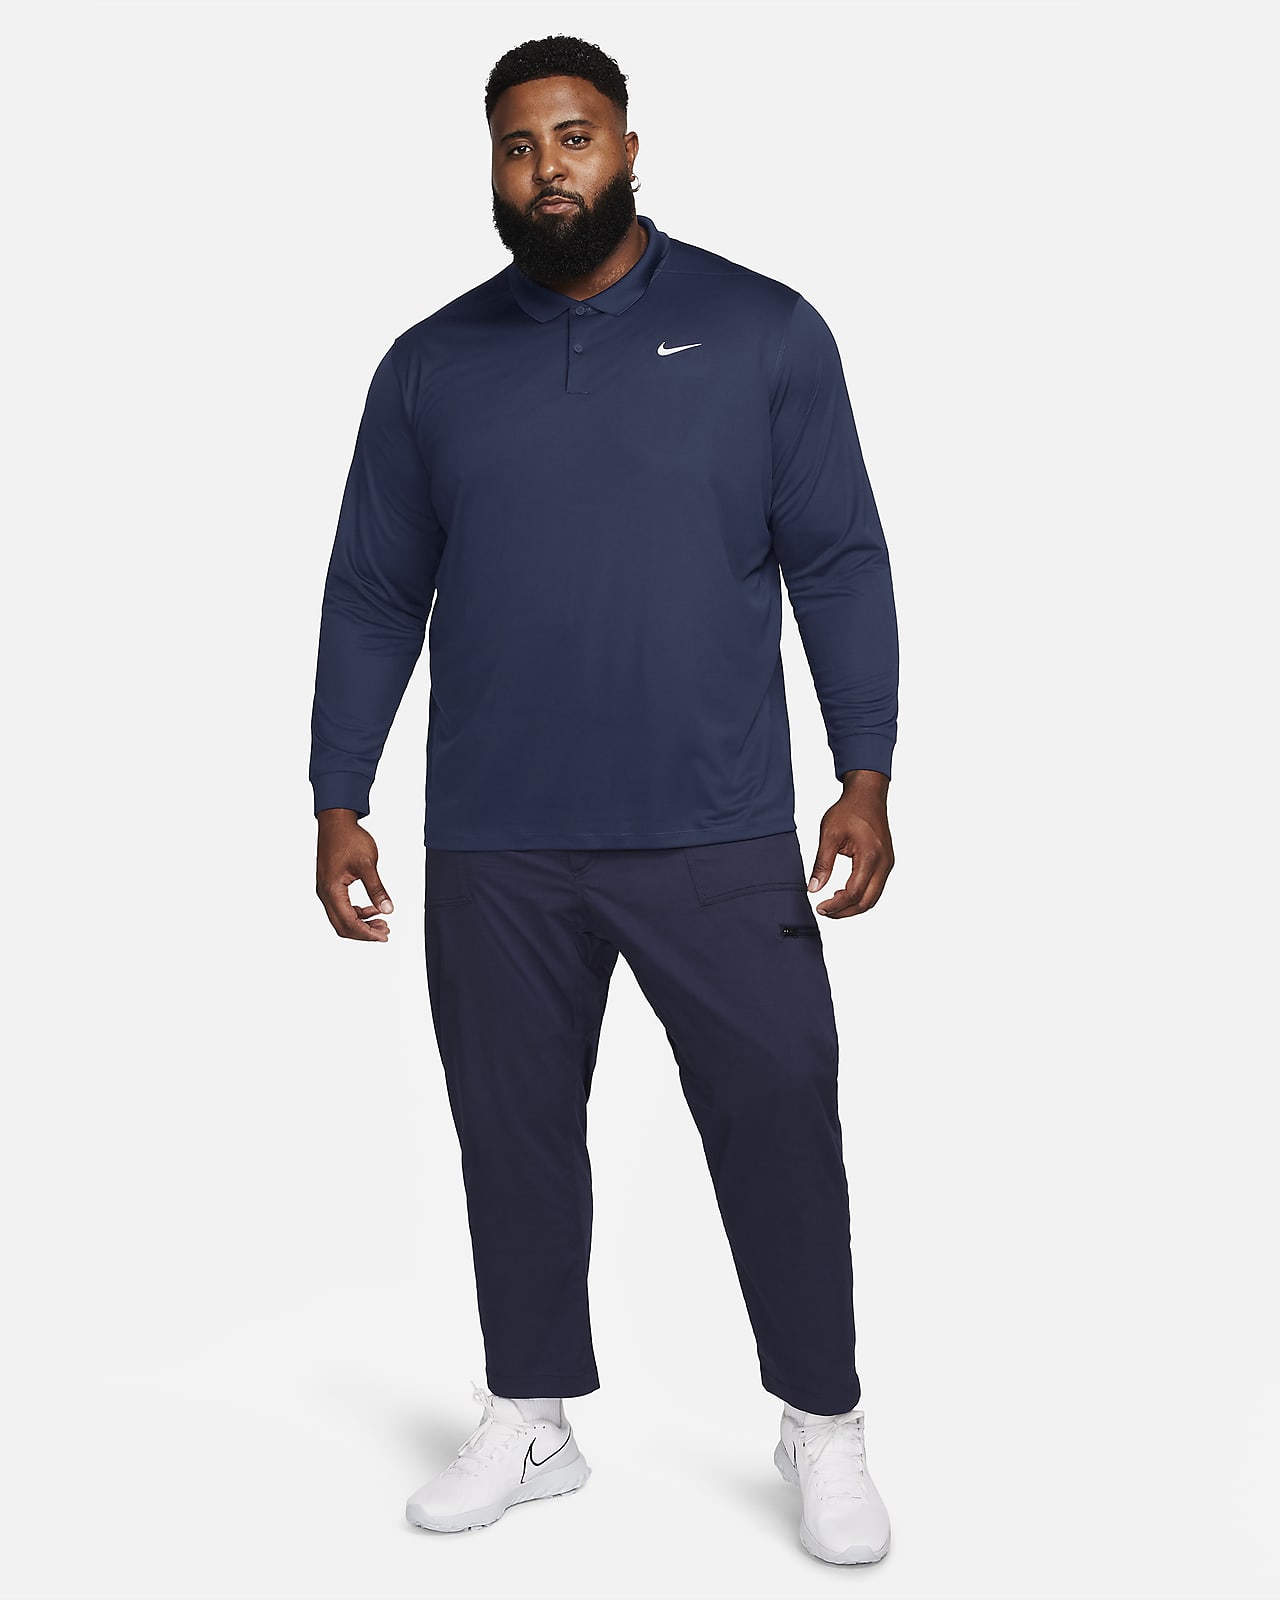 Nike Men's Dry Long Sleeve Hoodie Tee M / College Navy/White